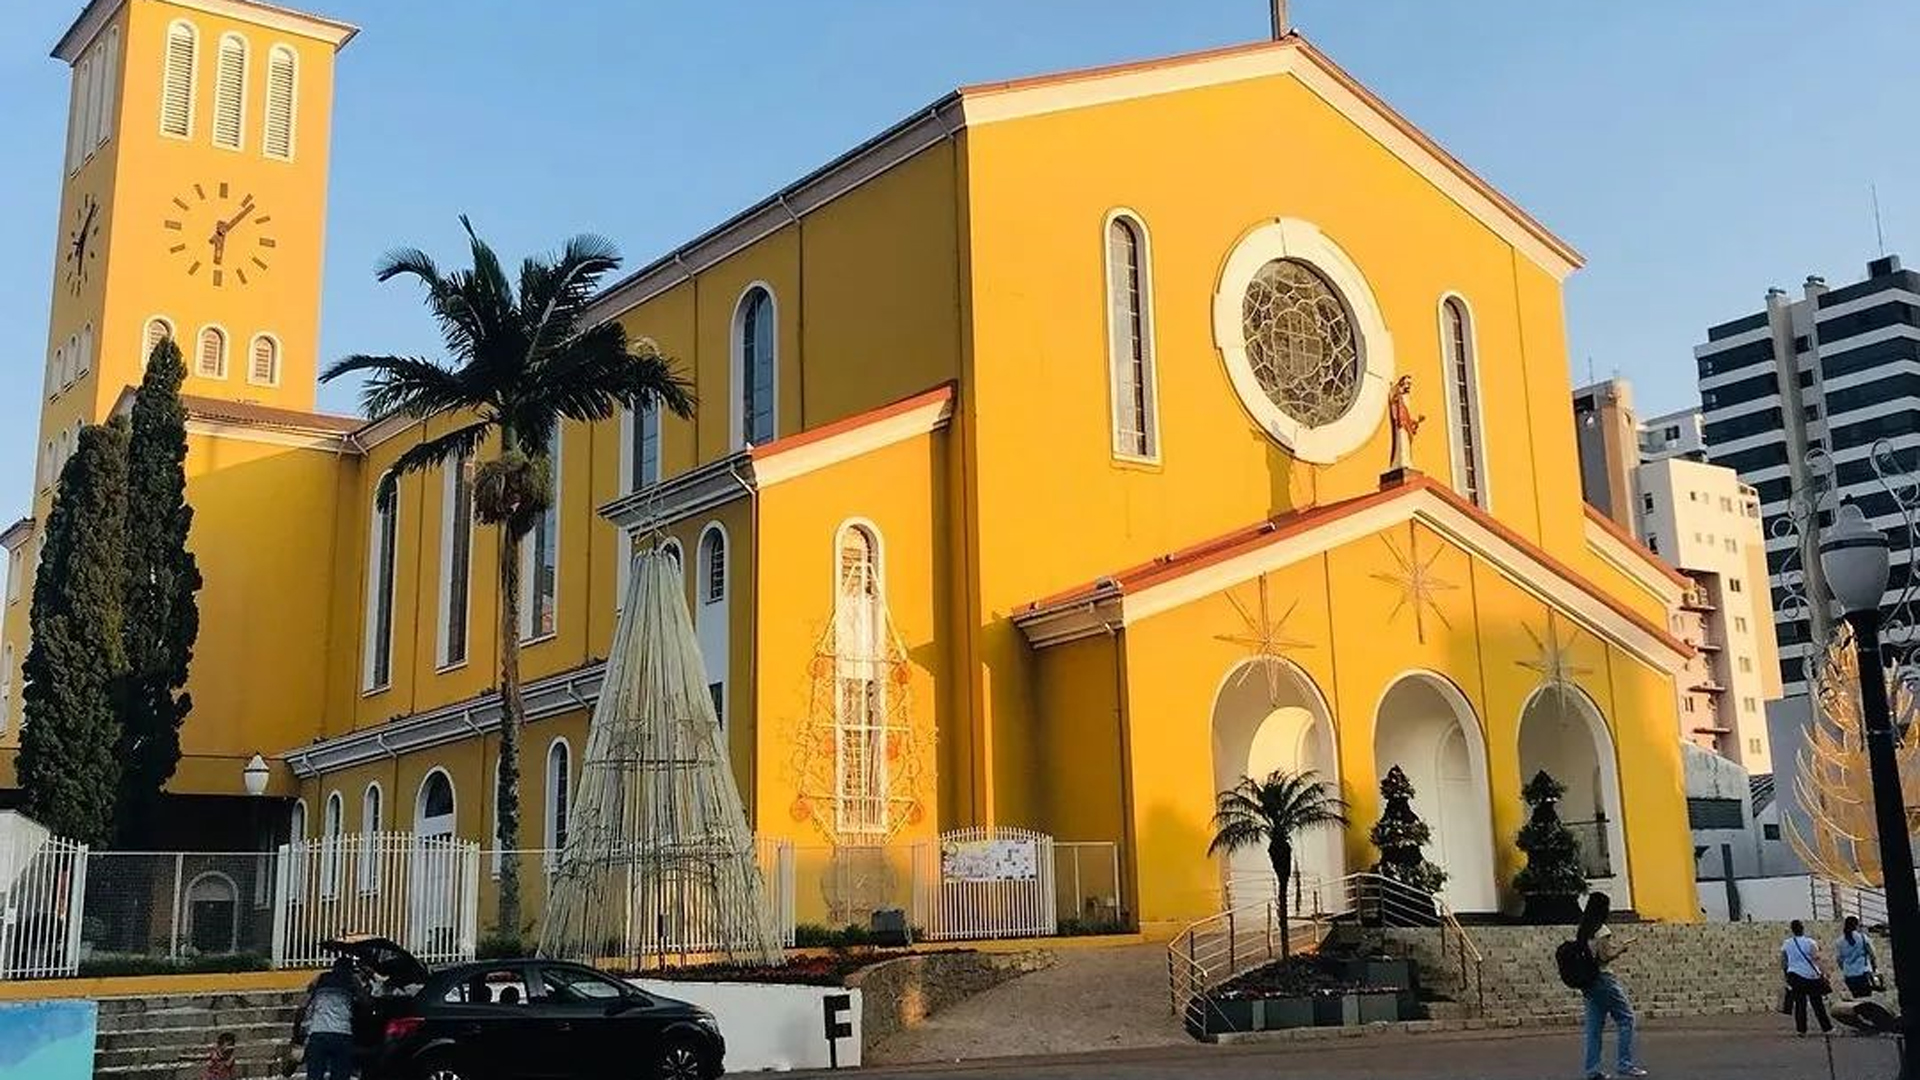 São Pedro e São Paulo: missionários na Igreja antiga e atual - Vatican News